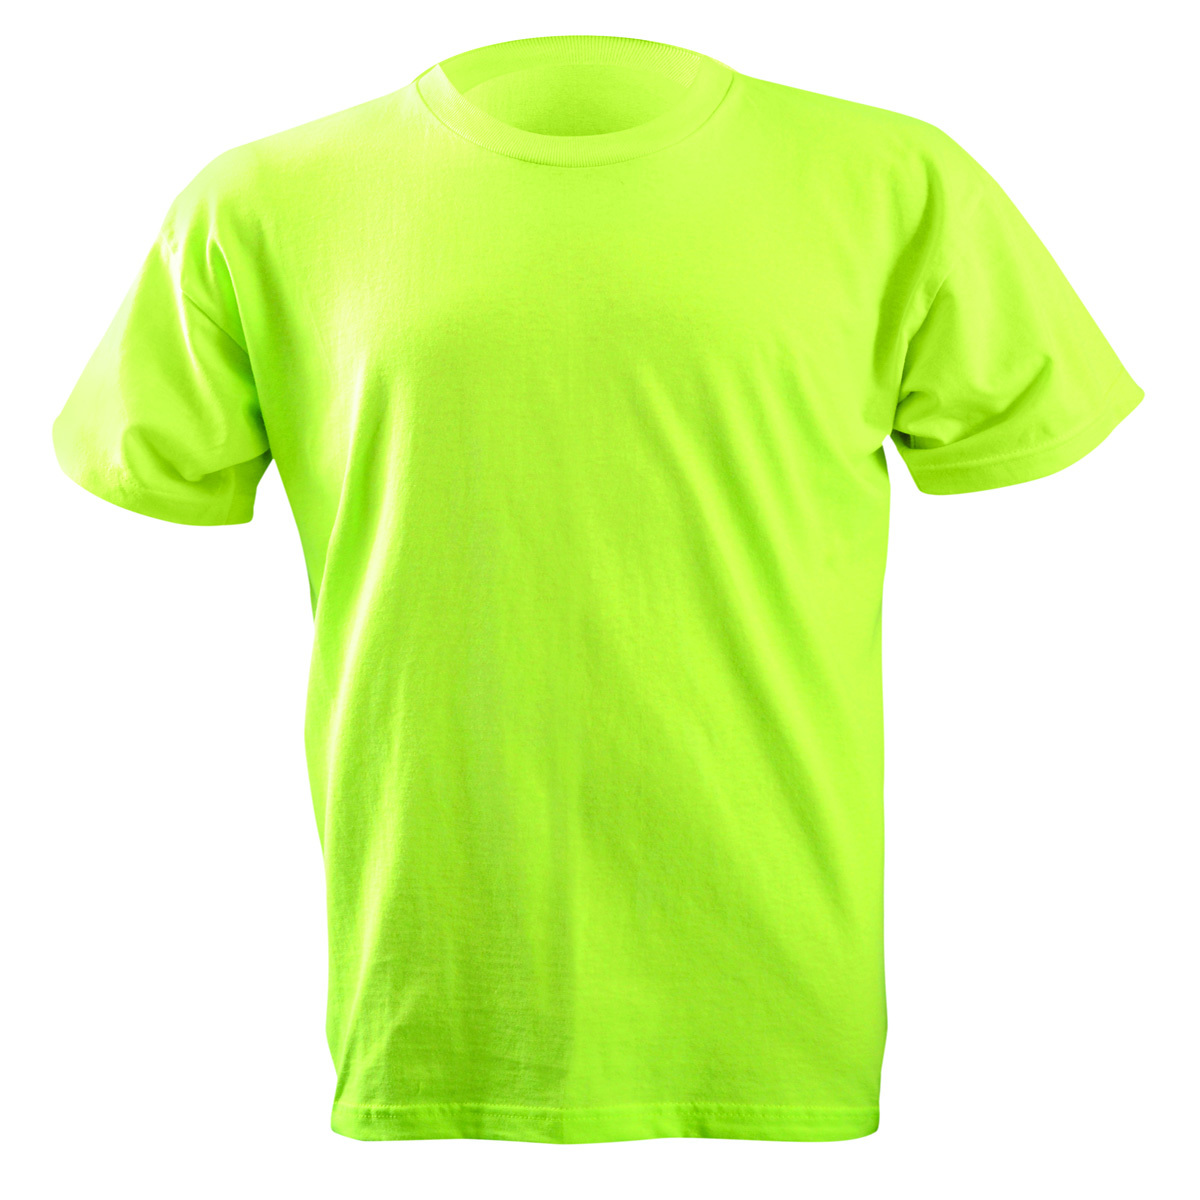 OccuNomix Medium Yellow 6 Ounce Cotton T-Shirt